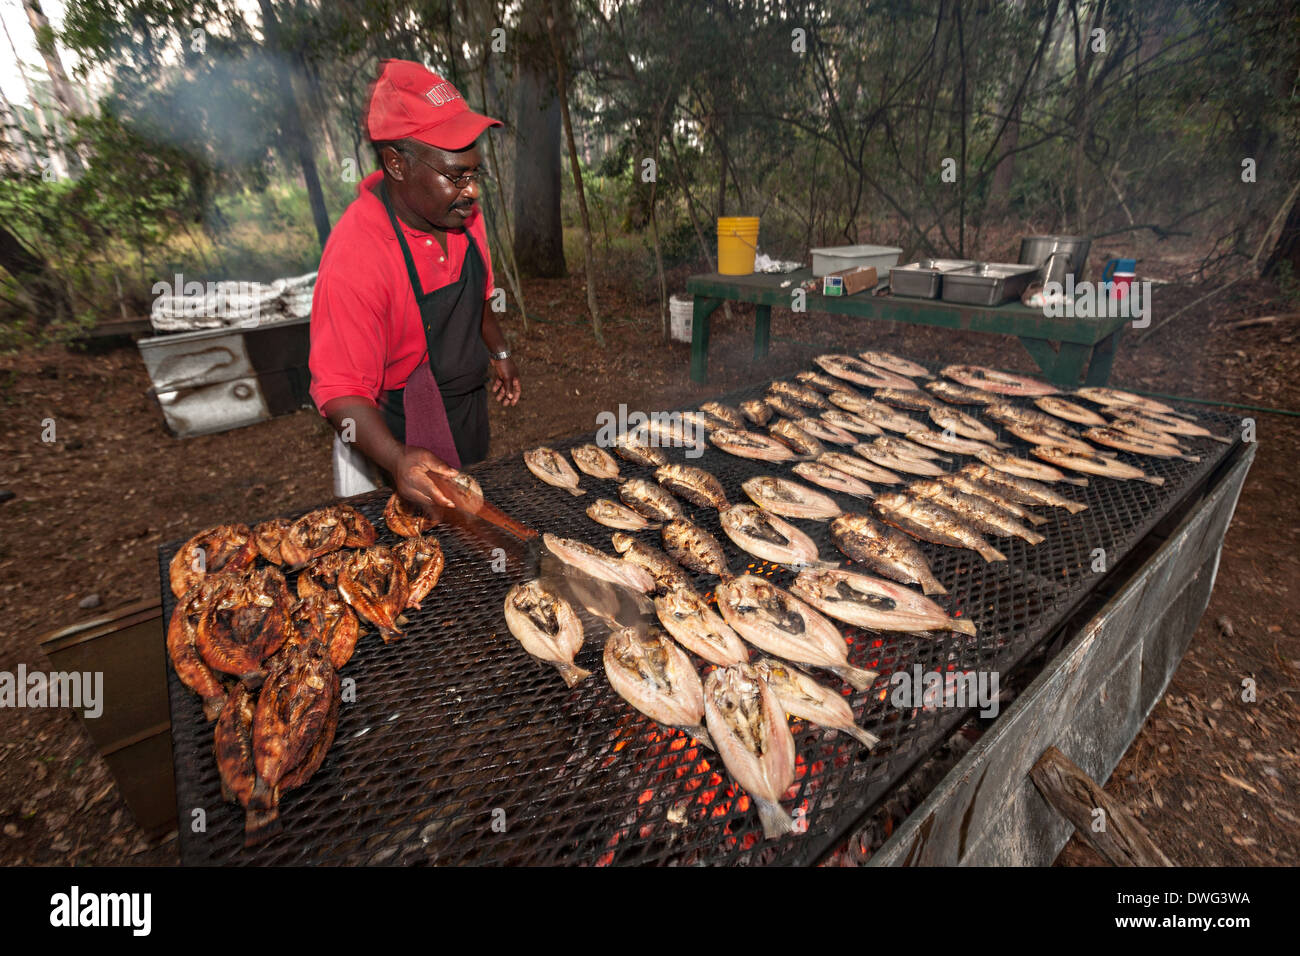 Un cuisinier grillades de poisson rougets pêchés localement sur Sapelo Island, Géorgie. Une communauté Gullah historique isolé occupé par les descendants des esclaves sur une île de la mer au large de la côte de la Géorgie. Banque D'Images